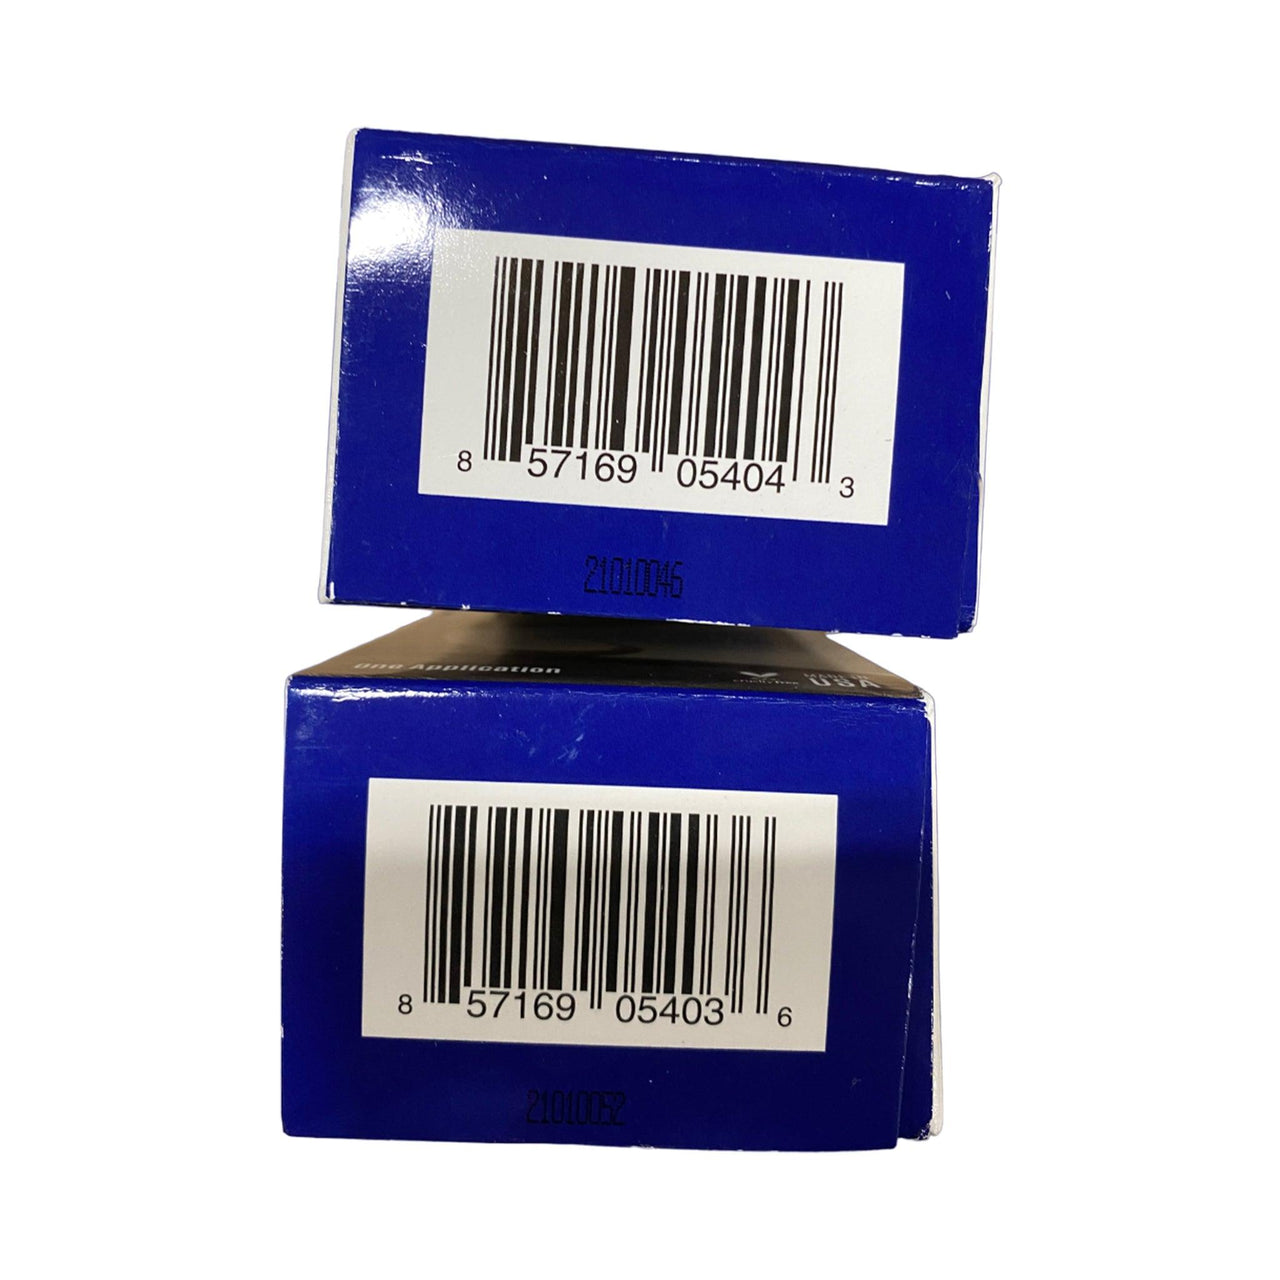 No Gray Permanent Hair Color - Wholesale (75 Pcs Box) - Discount Wholesalers Inc